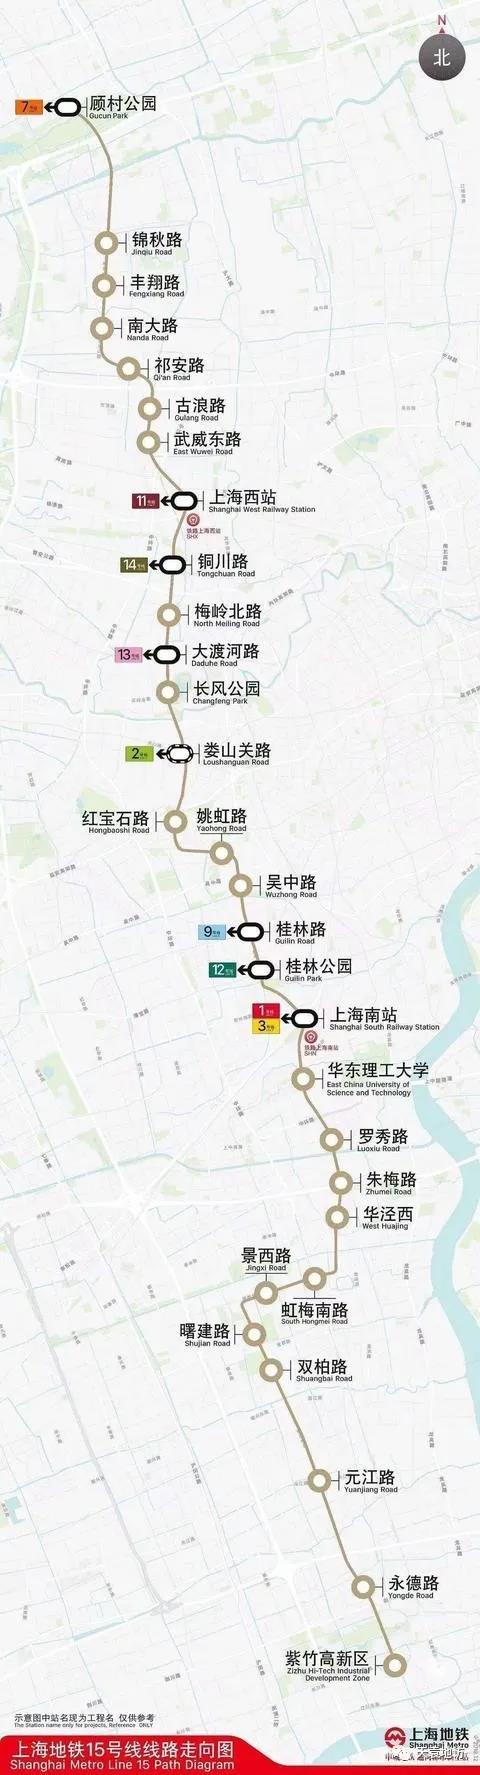 上海地铁15号线真的很鸡肋吗